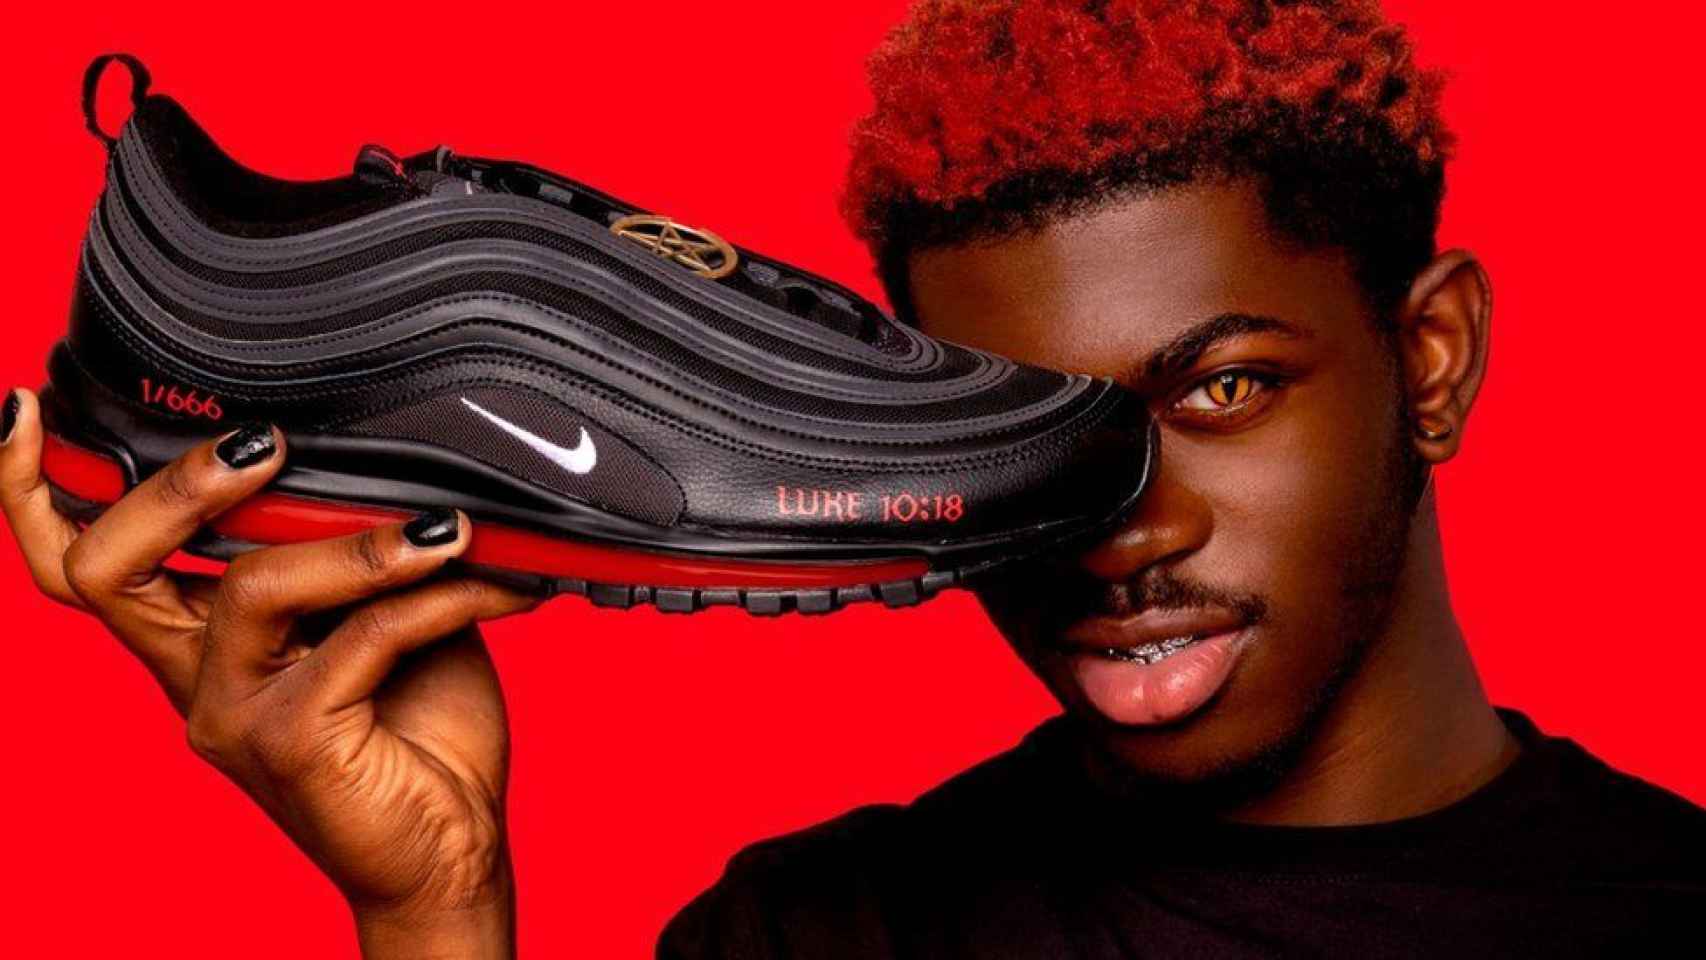 Comprimido Poderoso Observación Las Nike satánicas con sangre humana, a 1.018 $: creadas por el rapero Lil  Nas X sin ningún permiso